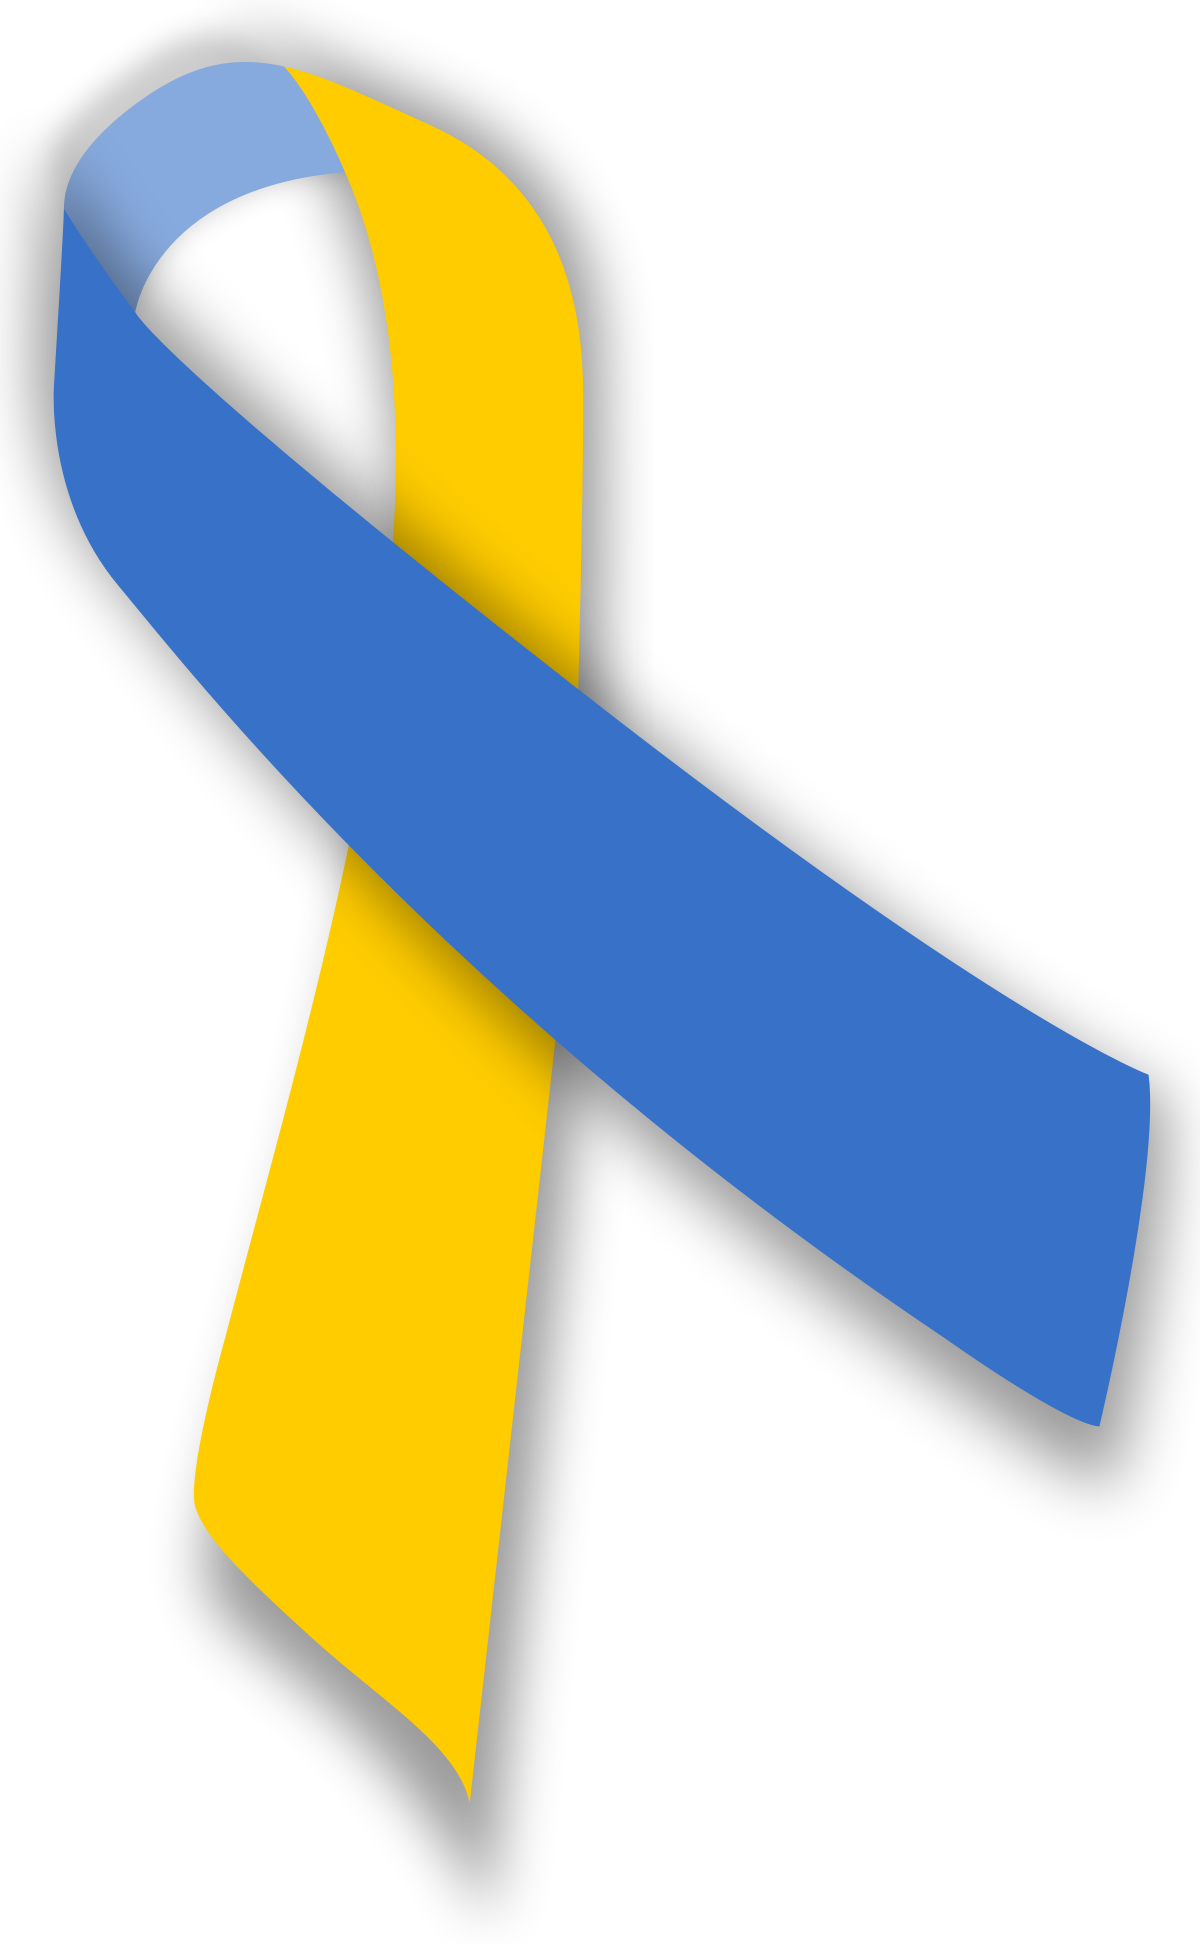 Down Syndrome ribbon